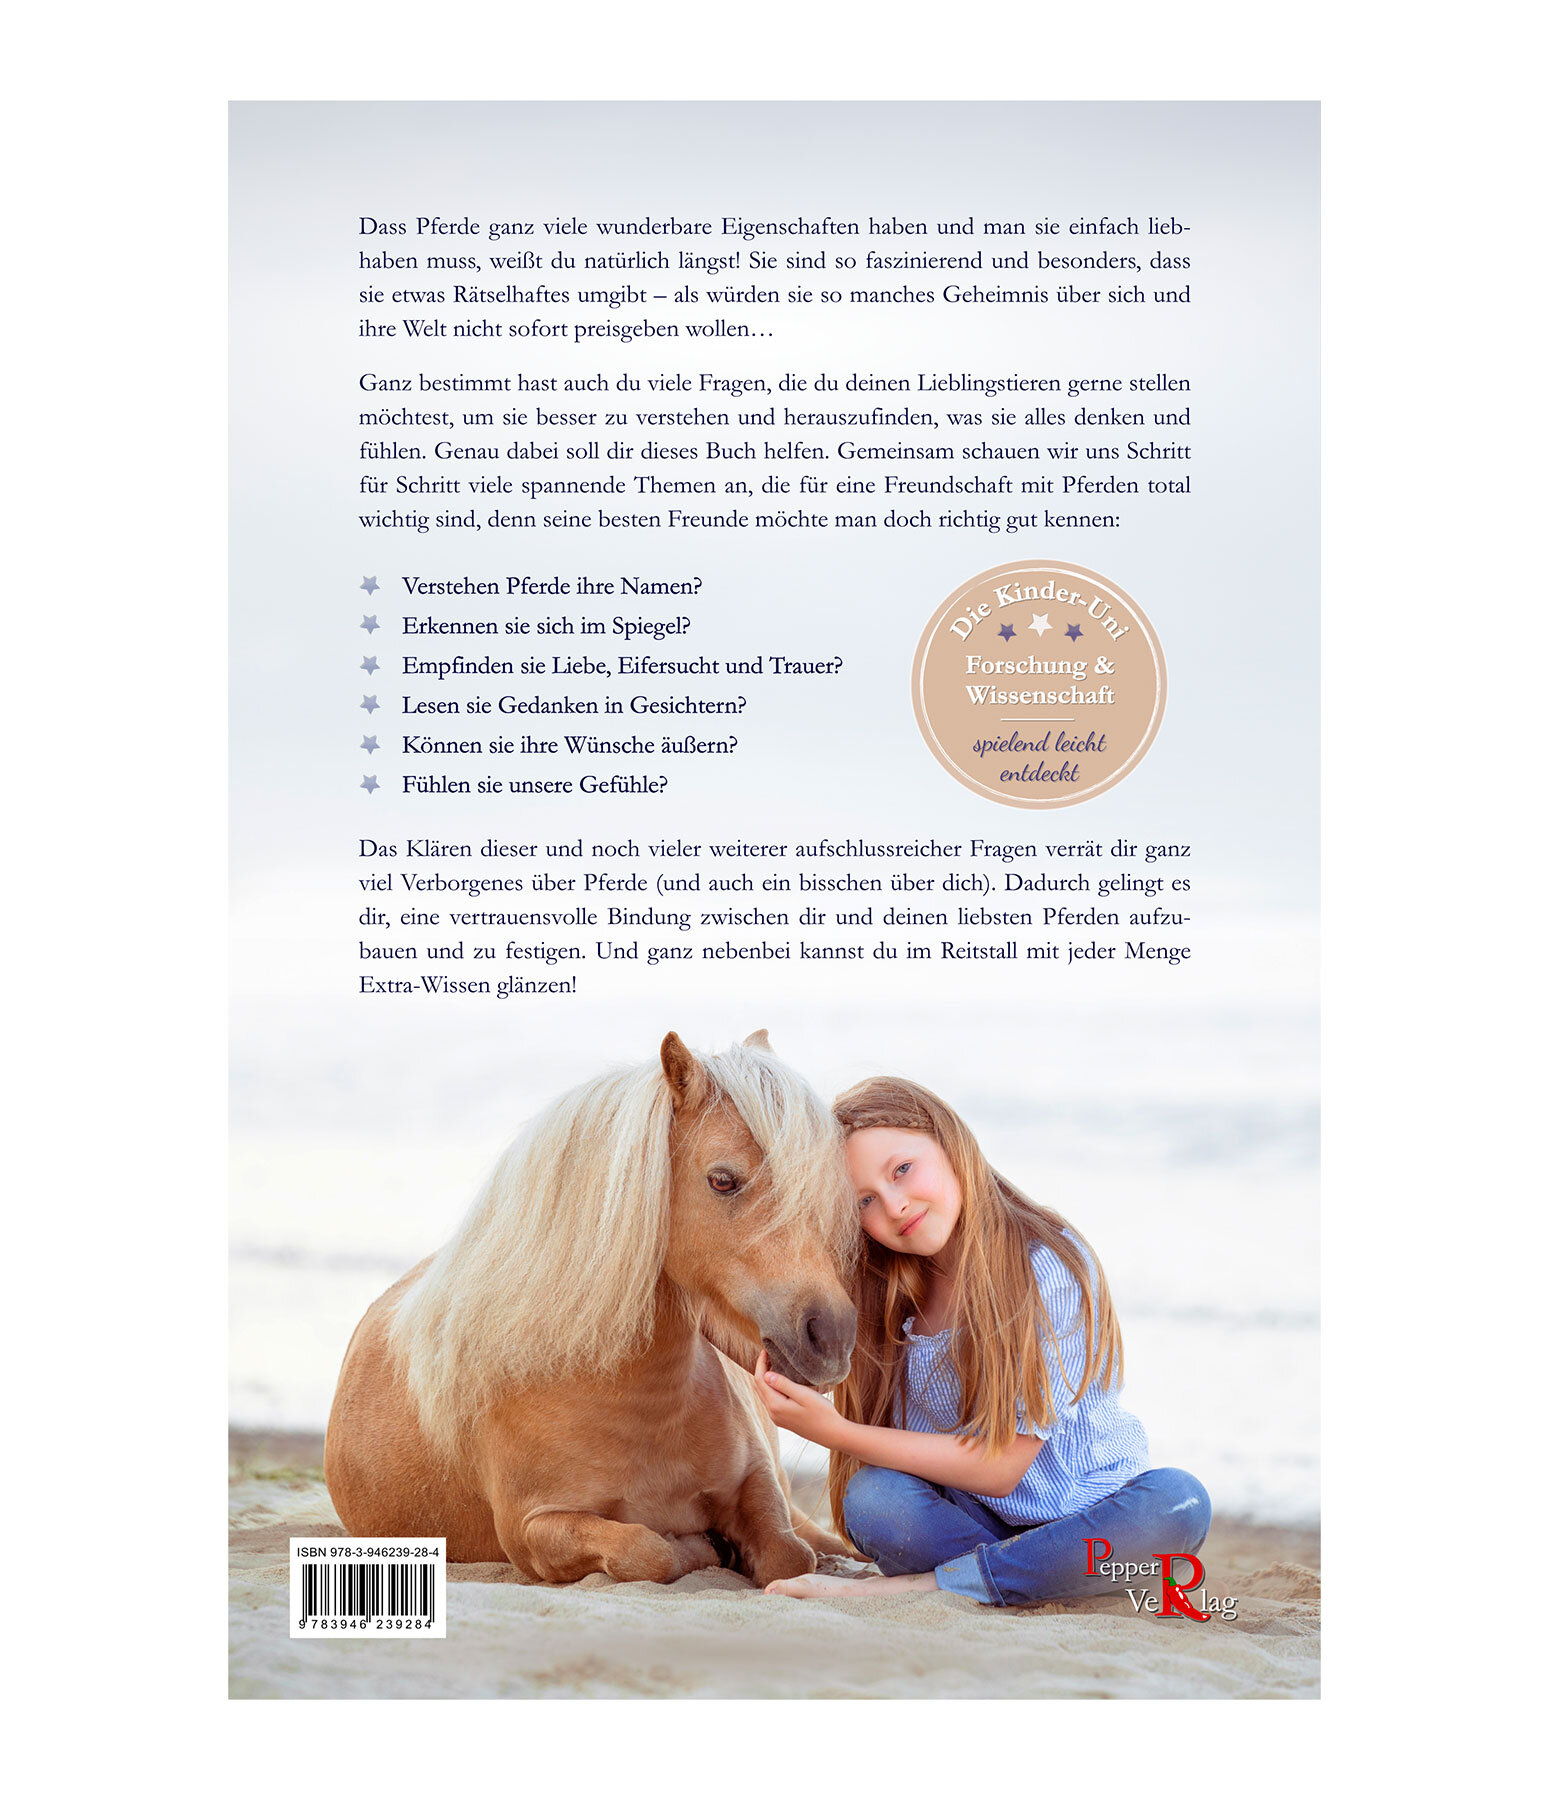 Freundschaft mit Pferden - Geheimwissen für Kinder